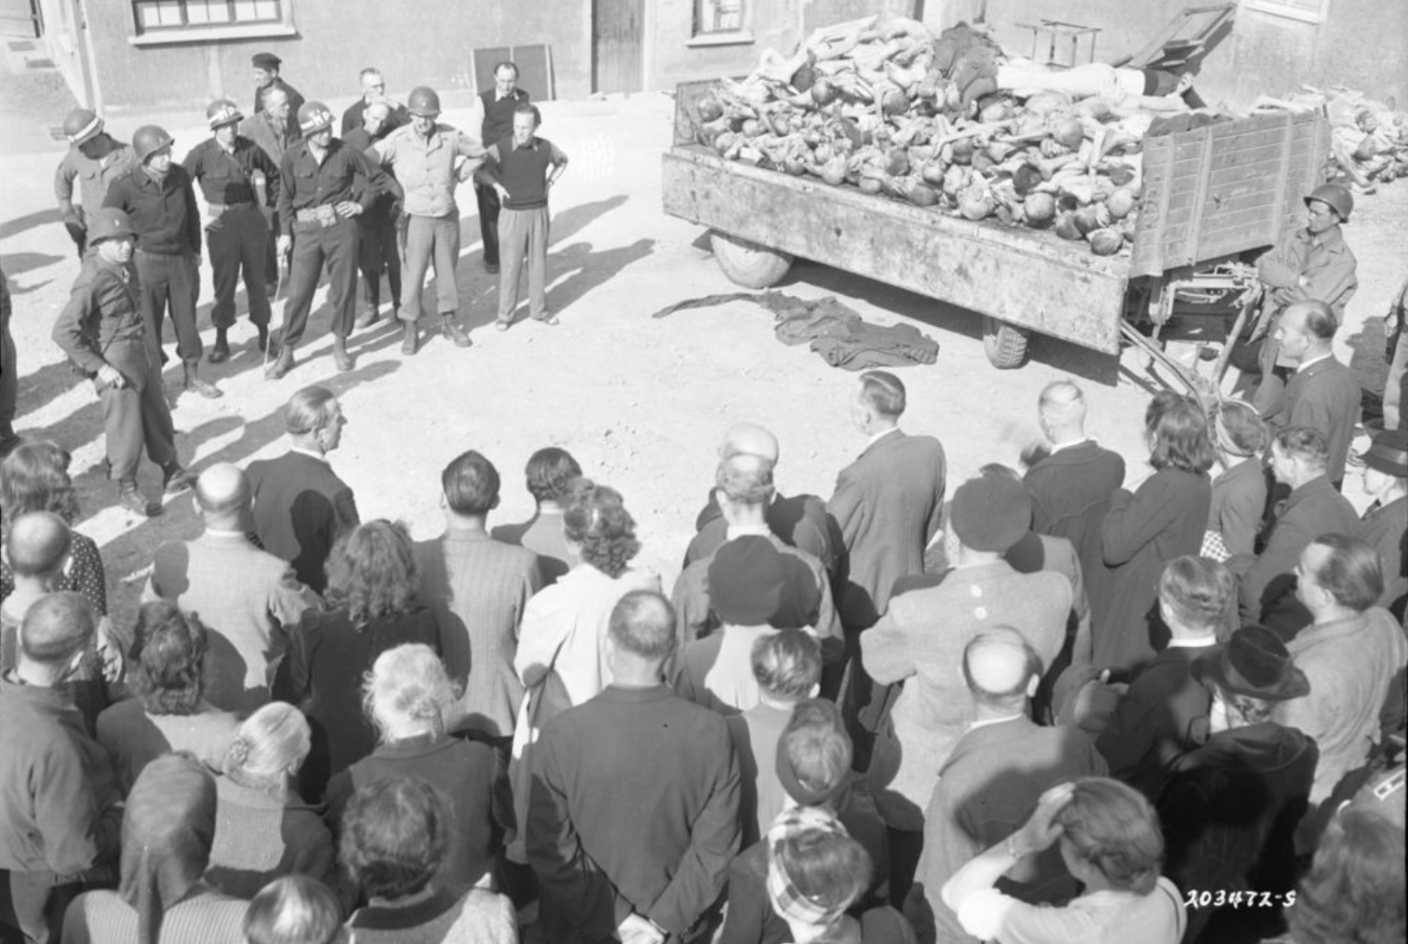 Einwohner Weimars bei der von den Amerikanern befohlenen Besichtigung des Konzentrationslagers Buchenwald im Innenhof des Krematoriums vor einem mit Leichen beladenen Lkw-Anhänger. Links neben dem Anhänger, mit Stahlhelm und heller Jacke, der amerikanische Kommandant Lorenz Schmuhl.